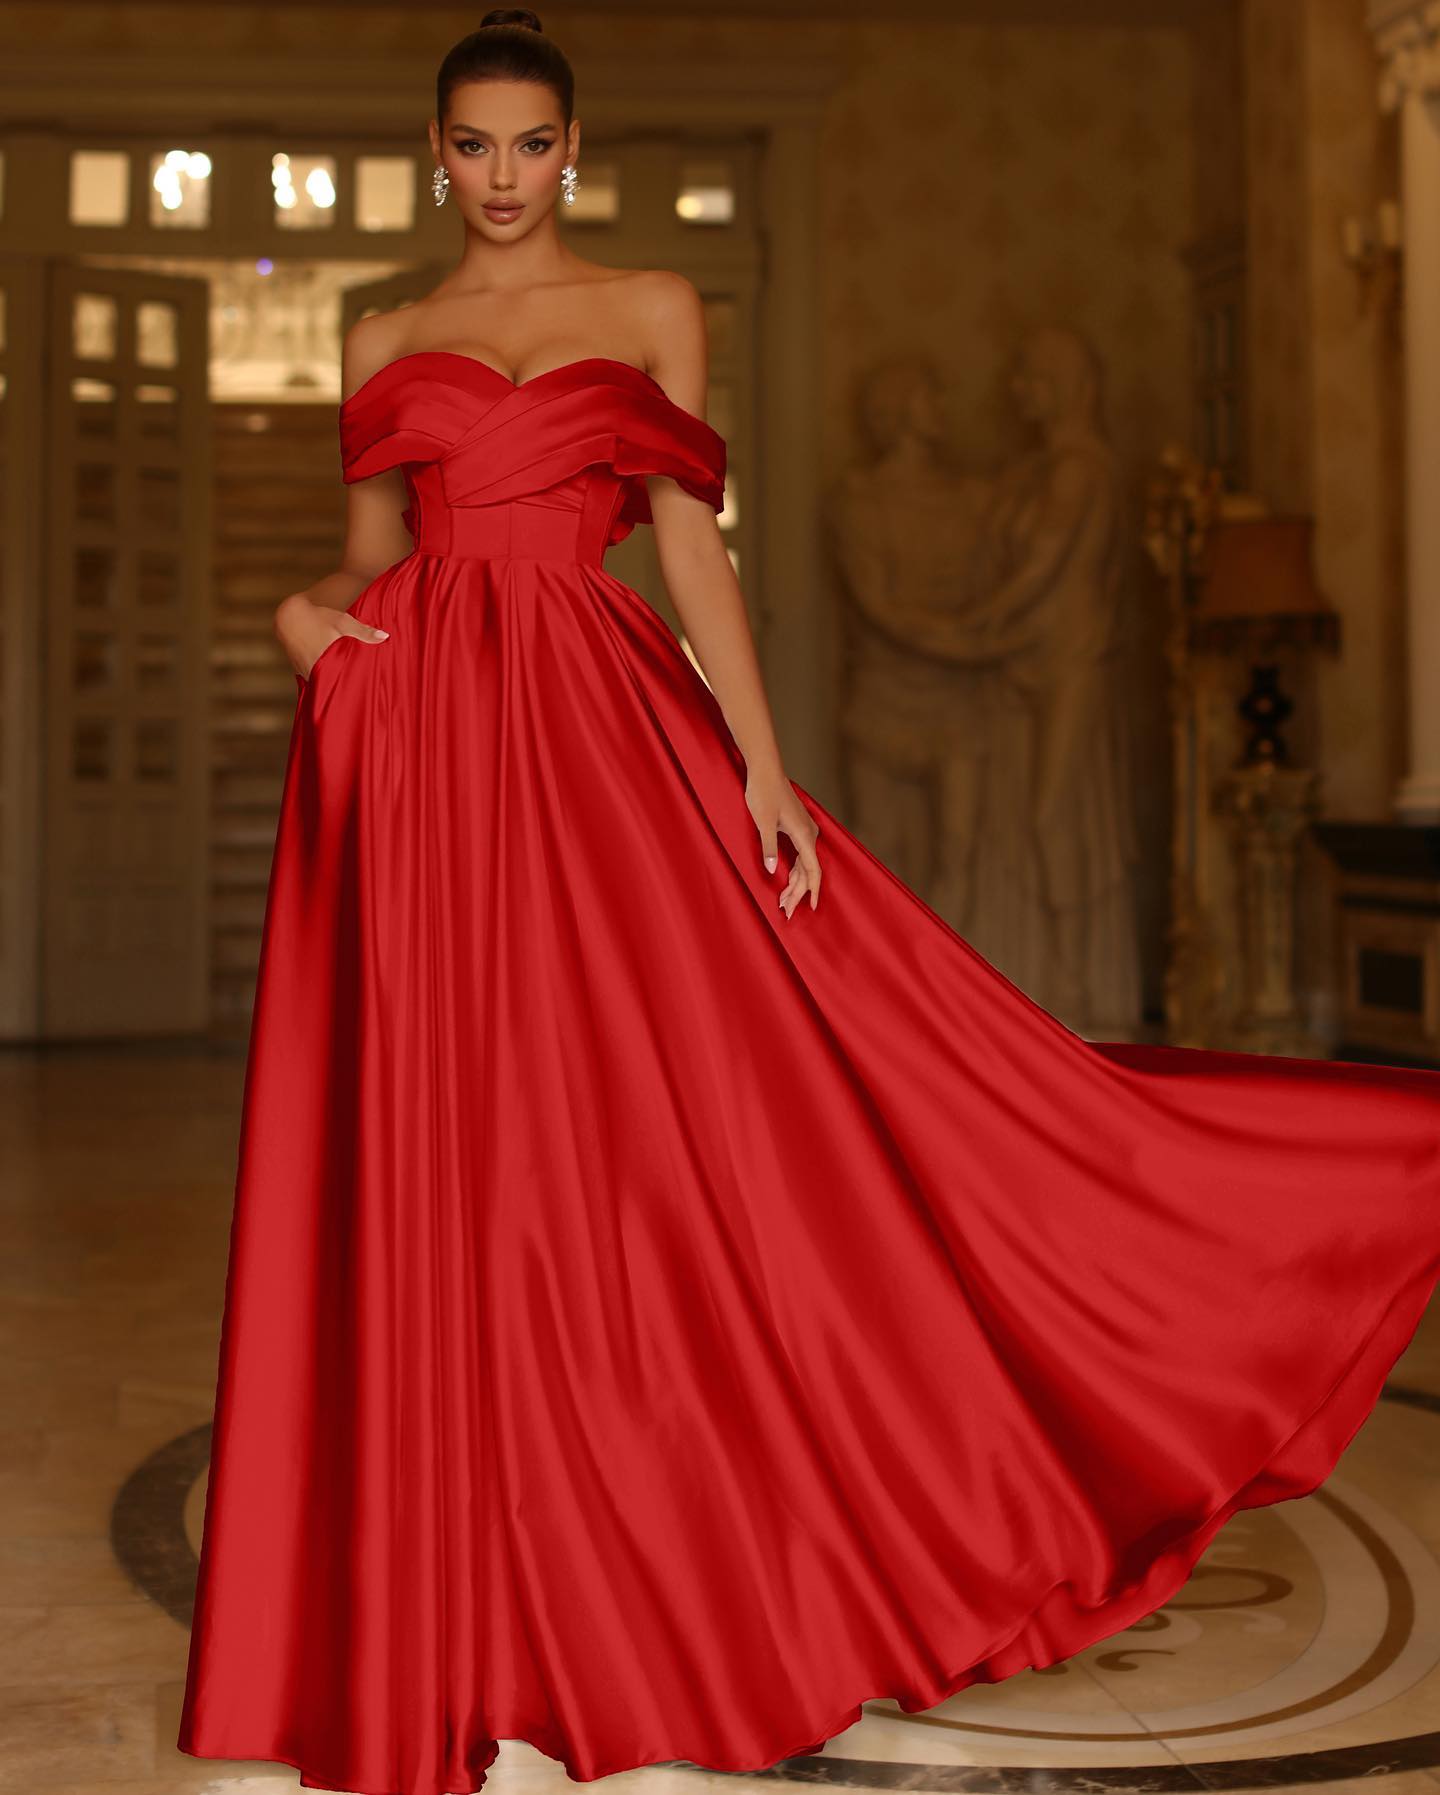 Oknass Red Off-the-shoulder Strapless Sleeveless A-line Graduation Evening Dress